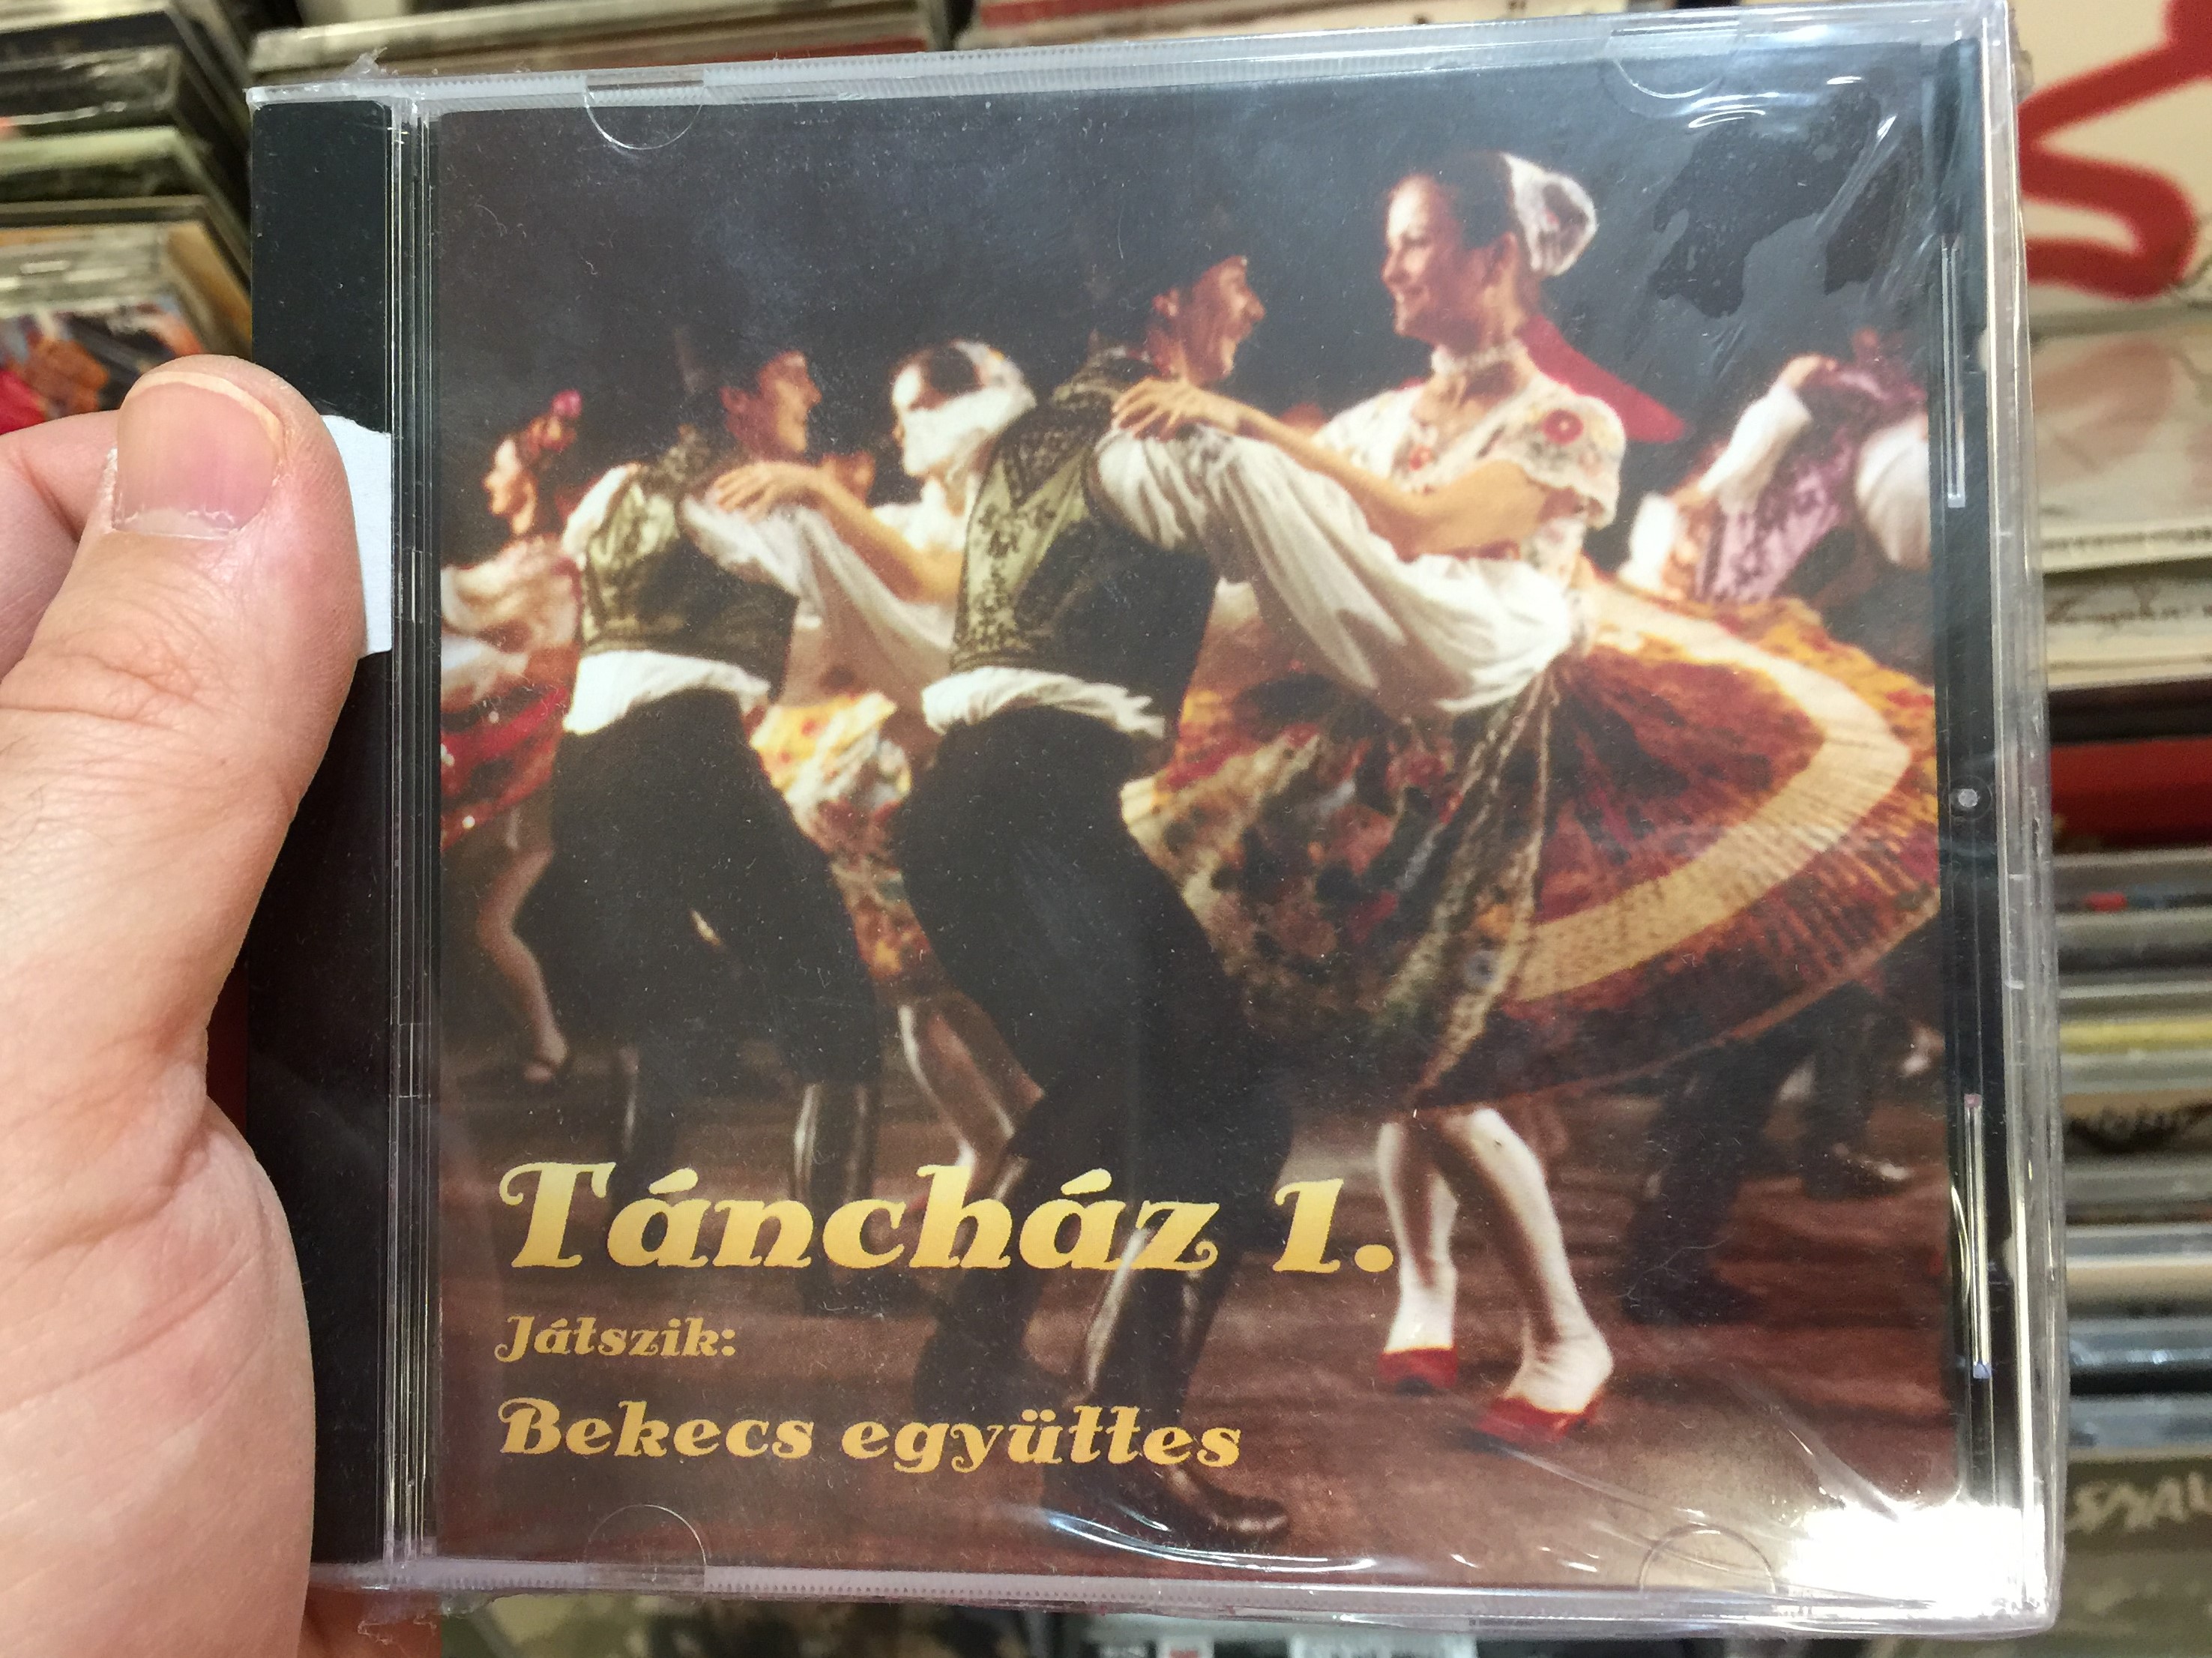 t-nch-z-1.-jatszik-bekecs-egy-ttes-n-ta-discont-audio-cd-1998-nd36-1-.jpg